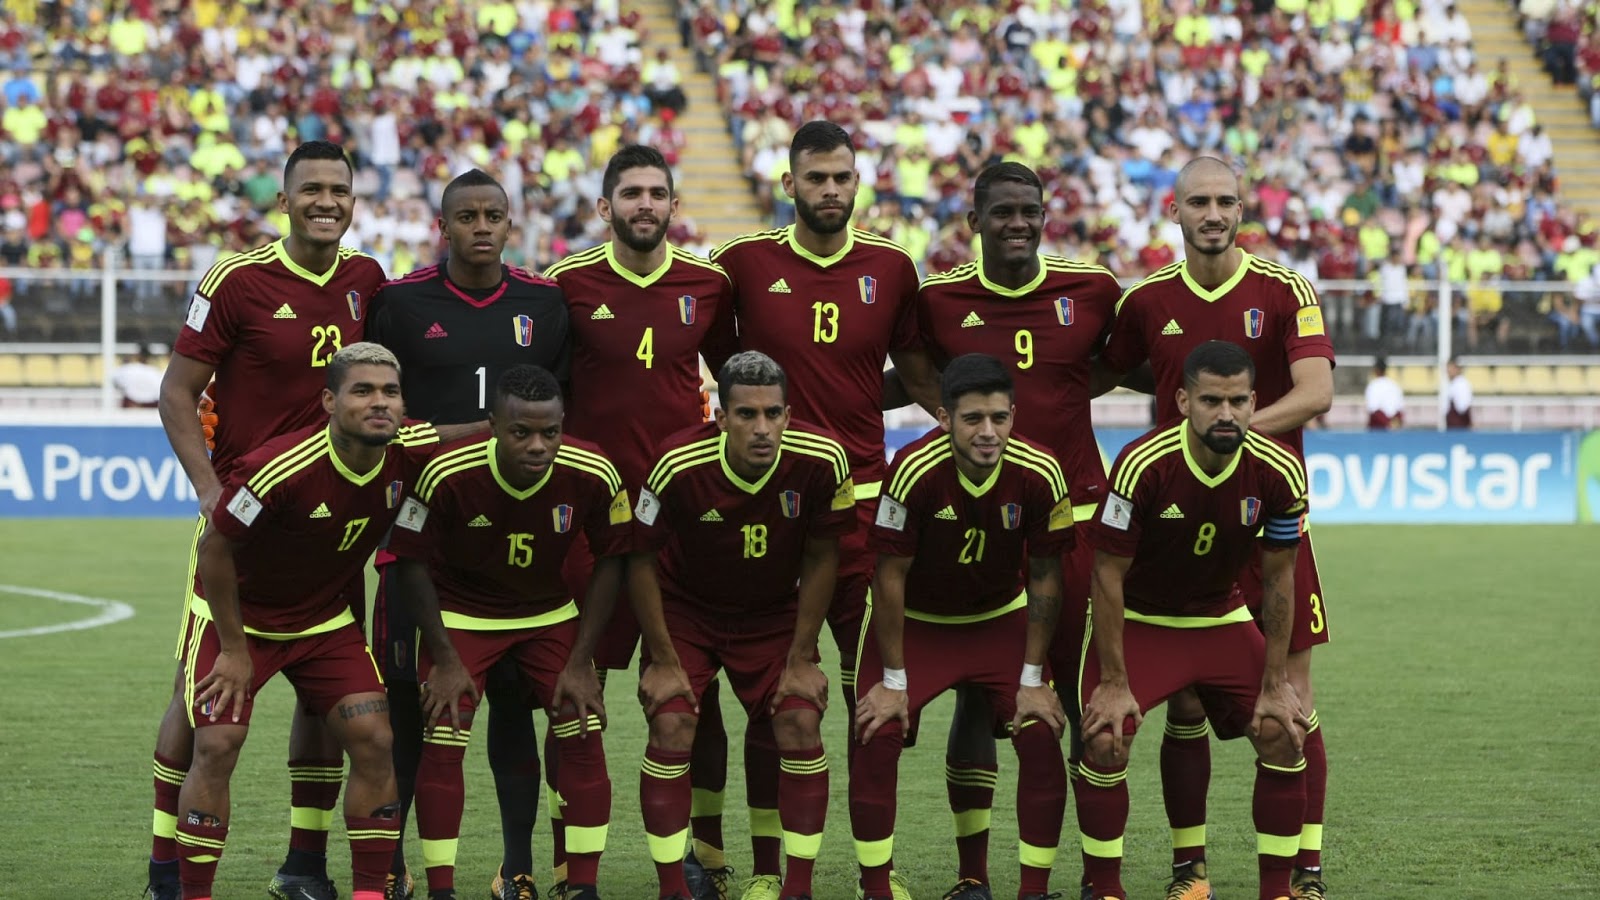 Đội tuyển bóng đá quốc gia Venezuela - Đội bóng nổi danh của vùng đất Nam Mỹ với những dòng rượu Van đỏ nổi tiếng